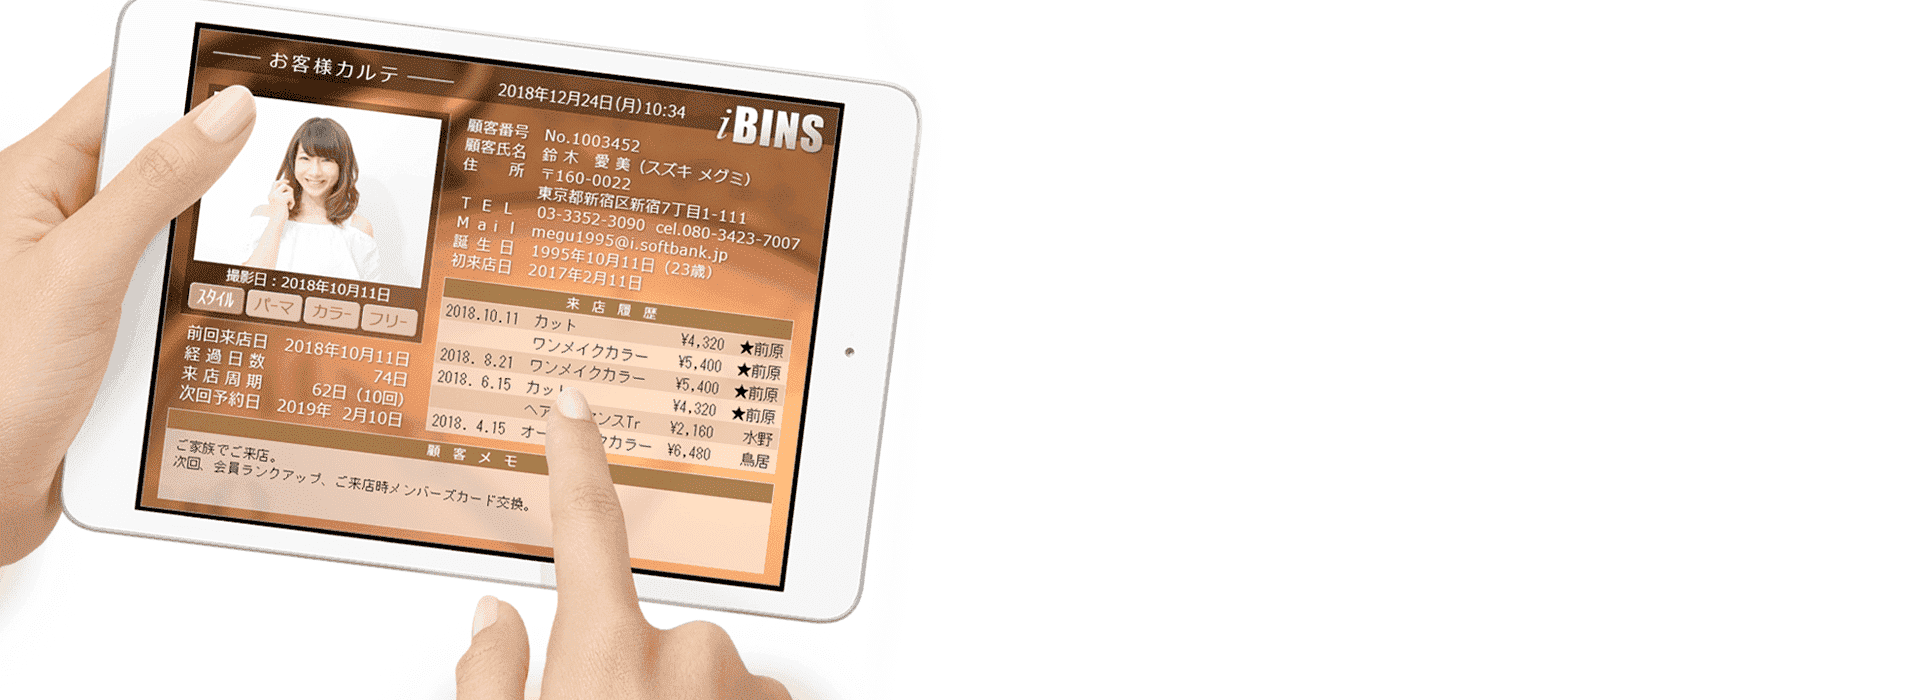 タブレットでサロン顧客管理「iBINS」イメージ背景画像